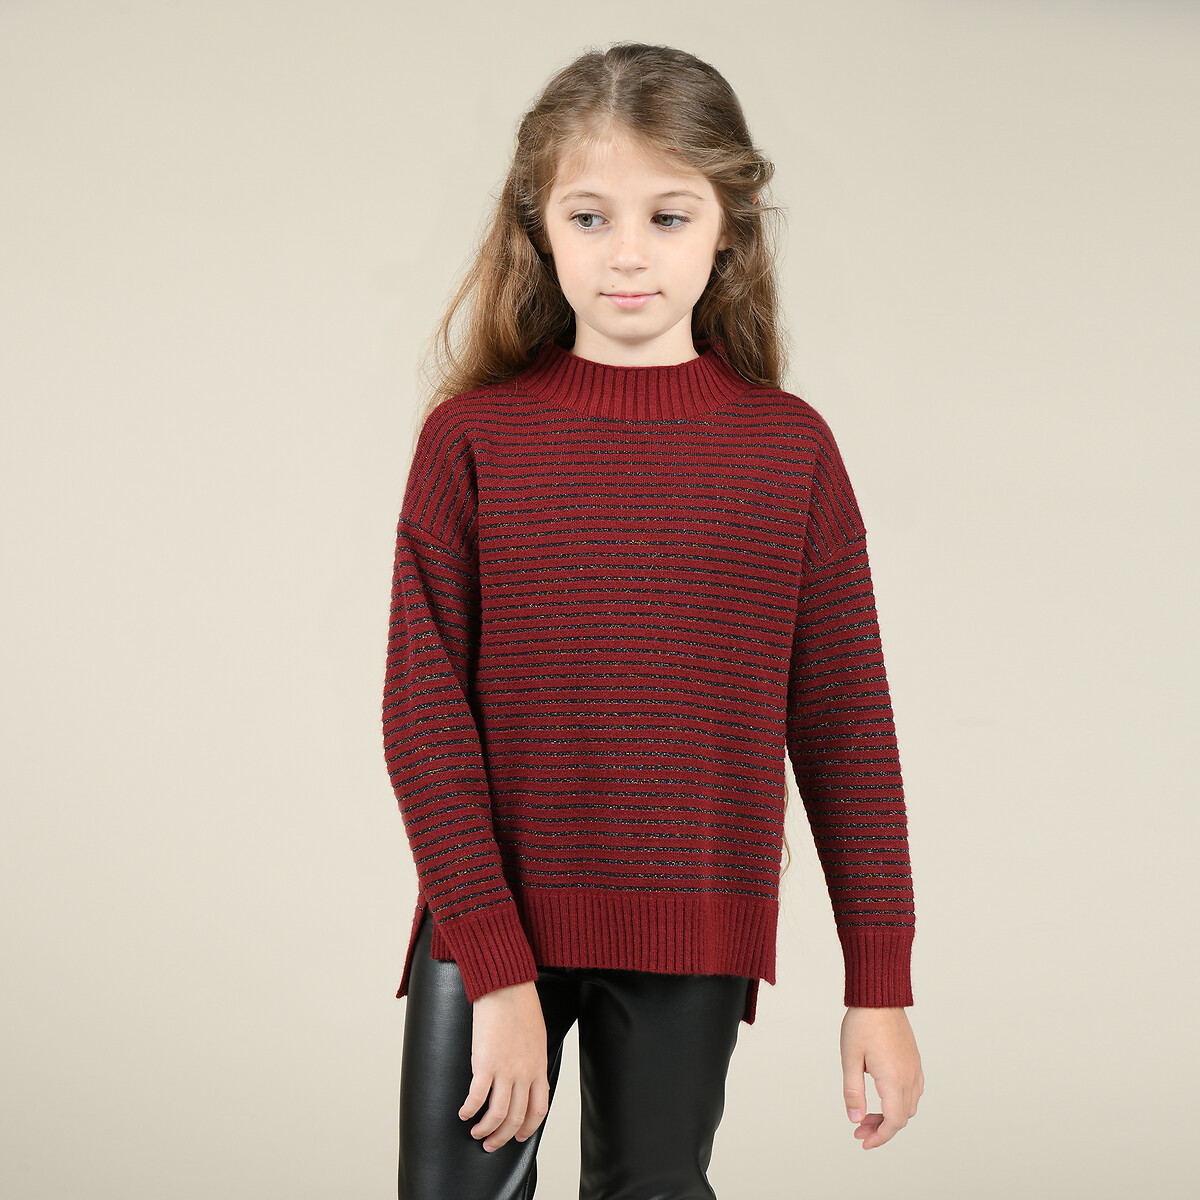 Пуловер La Redoute 4-14 лет 6/8 лет -114/126 см красный, размер 6/8 лет -114/126 см